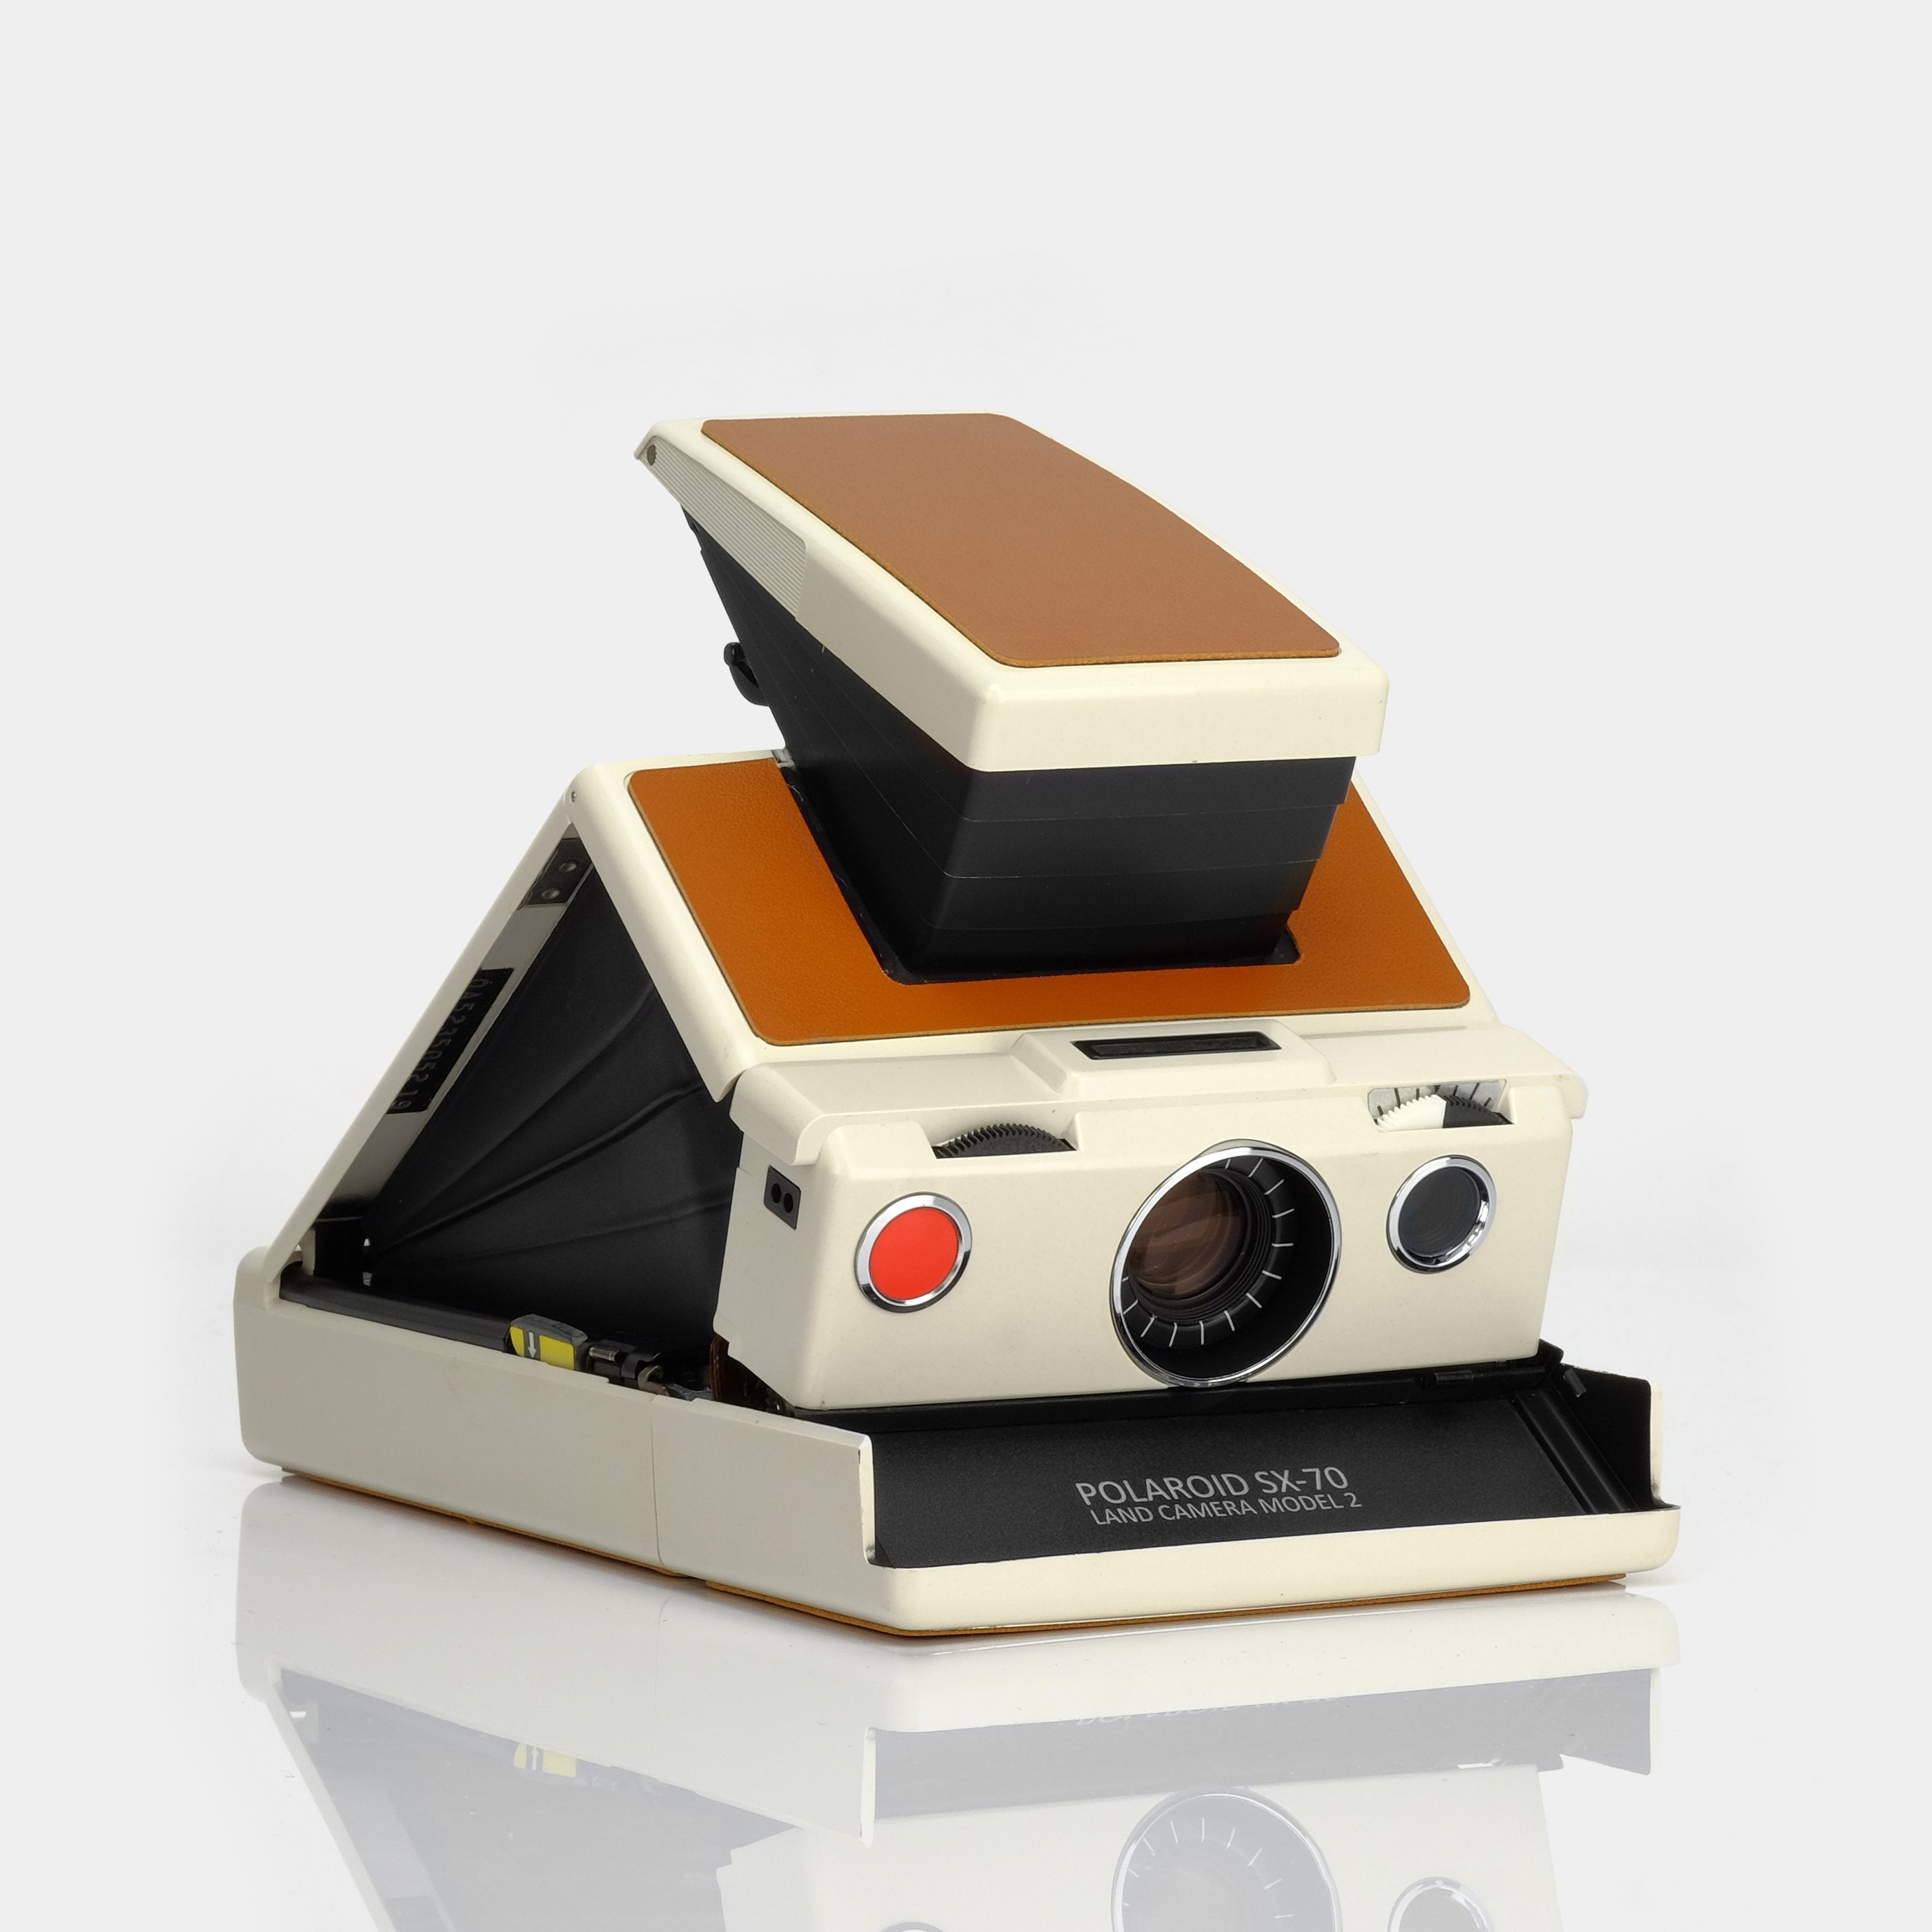 Polaroid SX-70 Folding Camera Repair (Non-Autofocus Models)